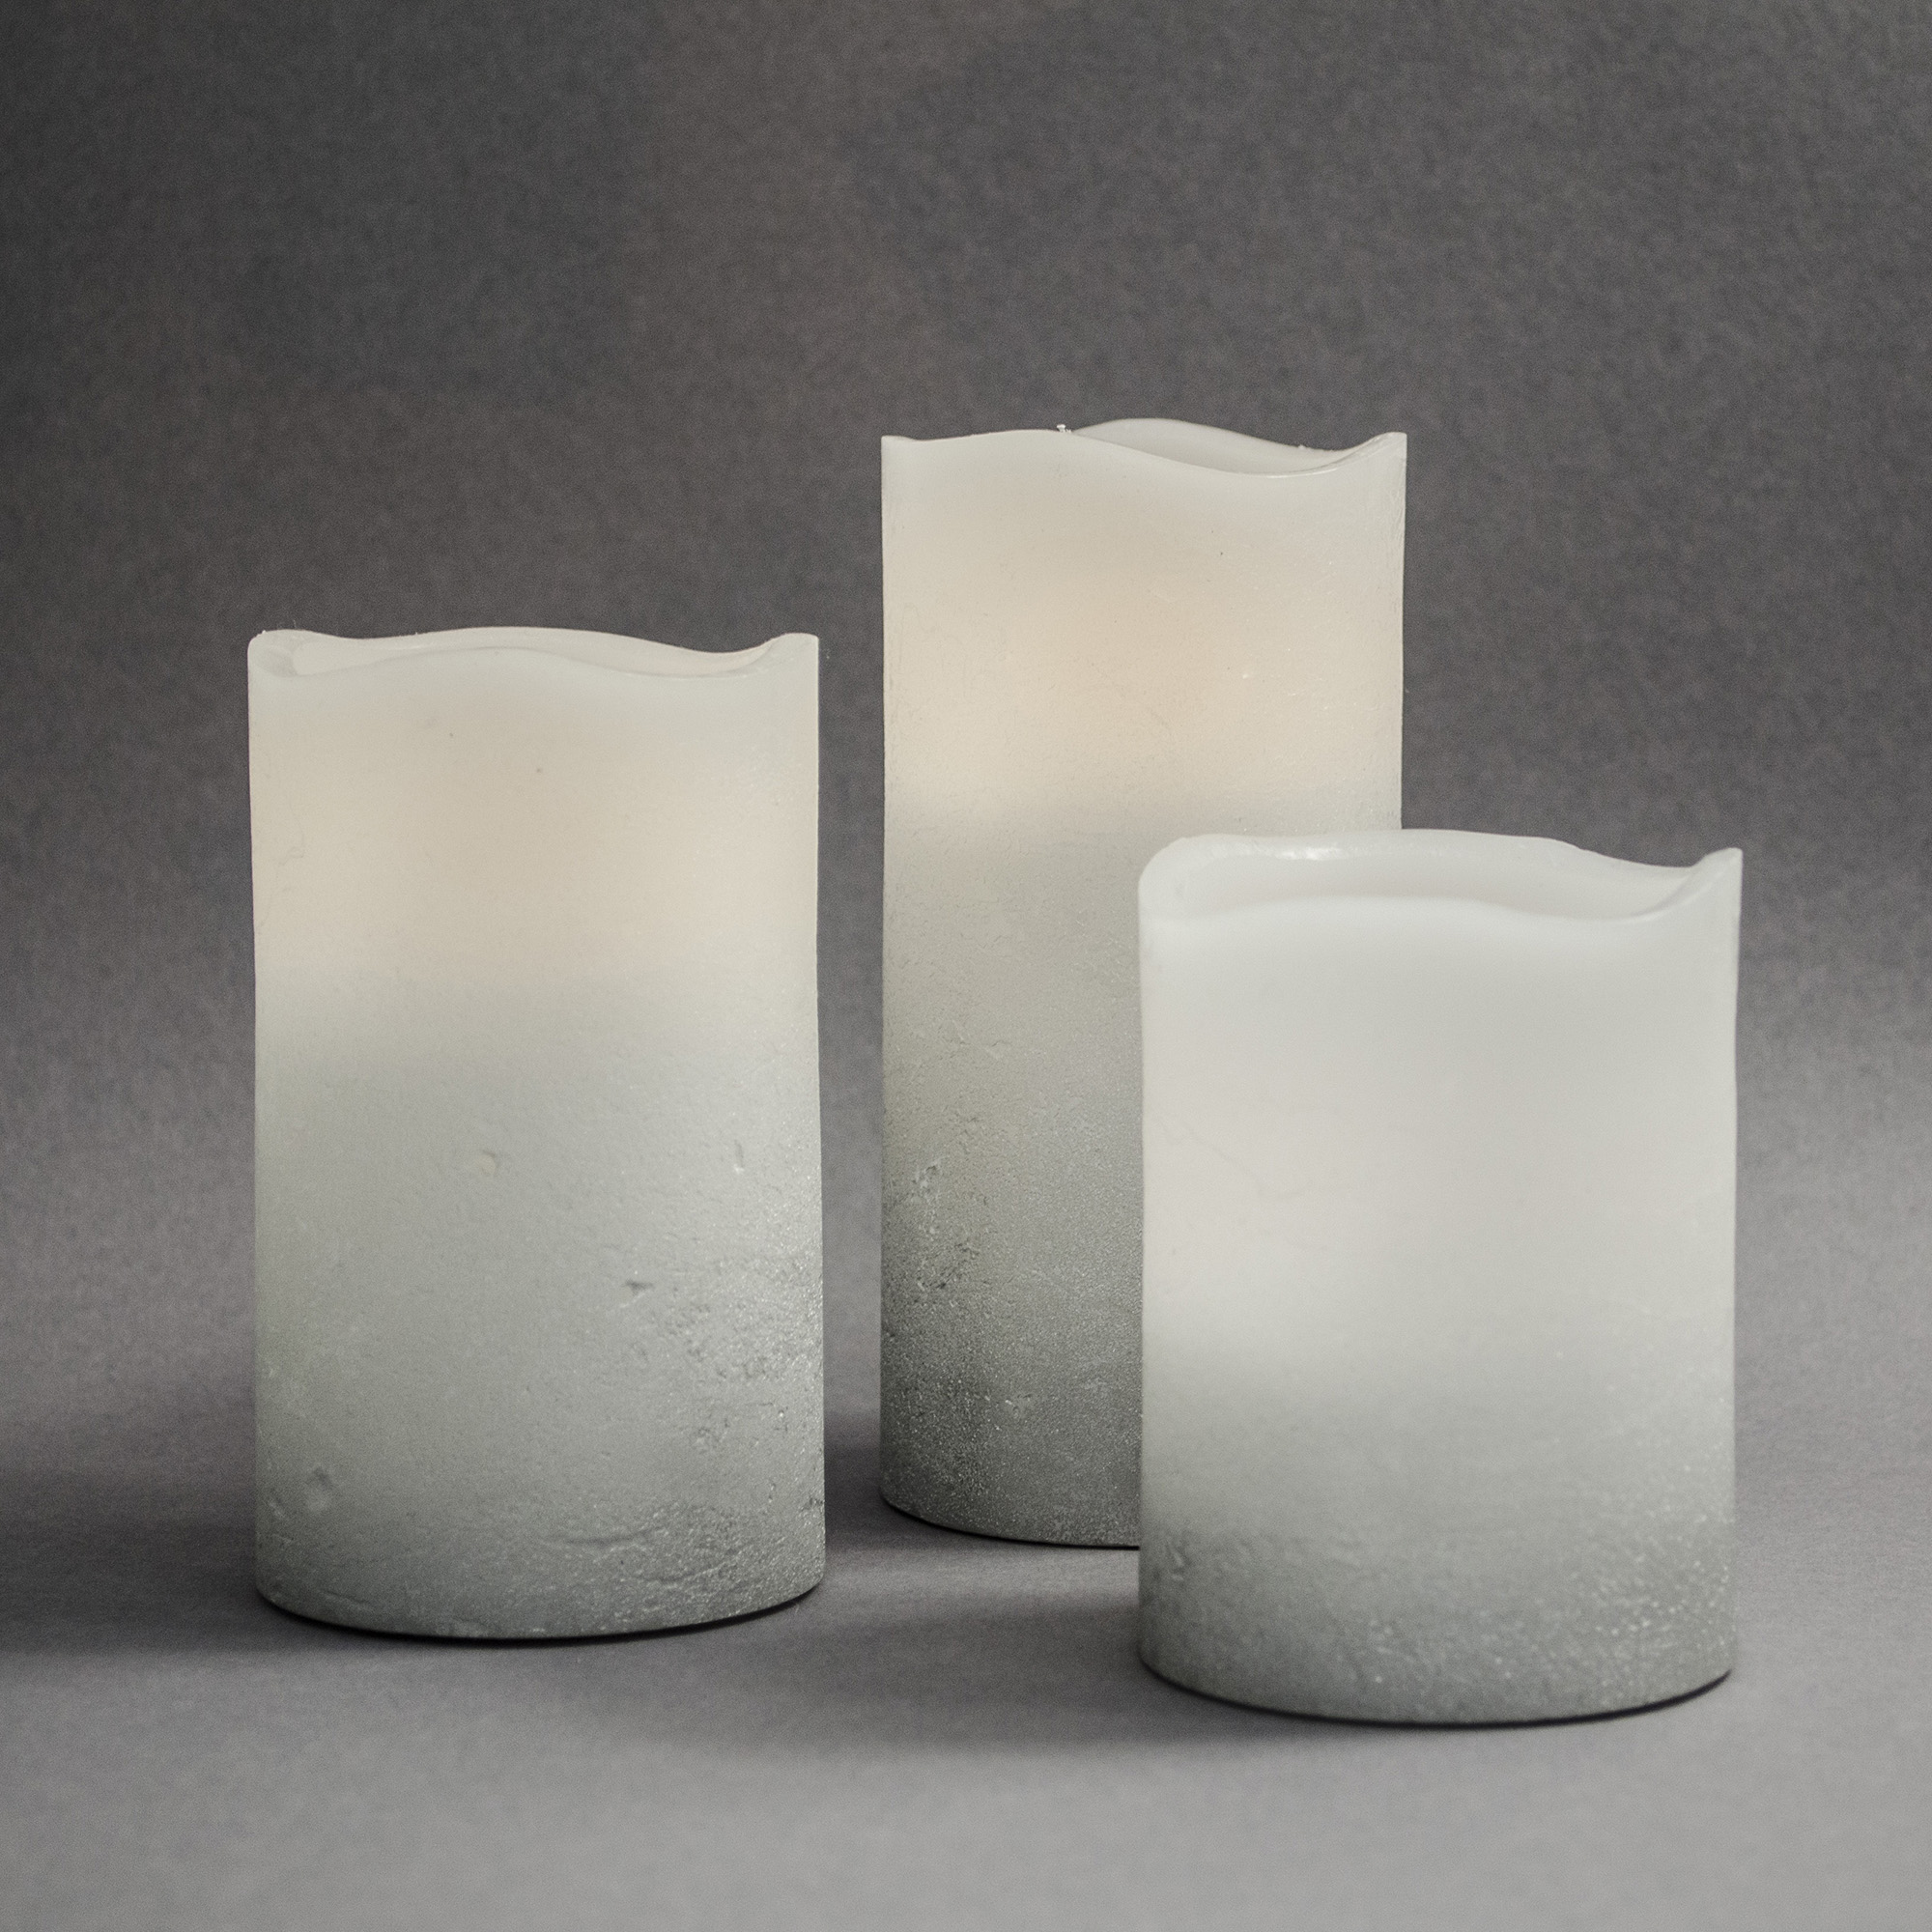 X4-LIFE LED Kerzen 3er-Set mit Fernbedienung, LED Echtwachskerzen, täuschend echt flackernde Kerzenflamme, Kerzen 10cm 13cm 15cm